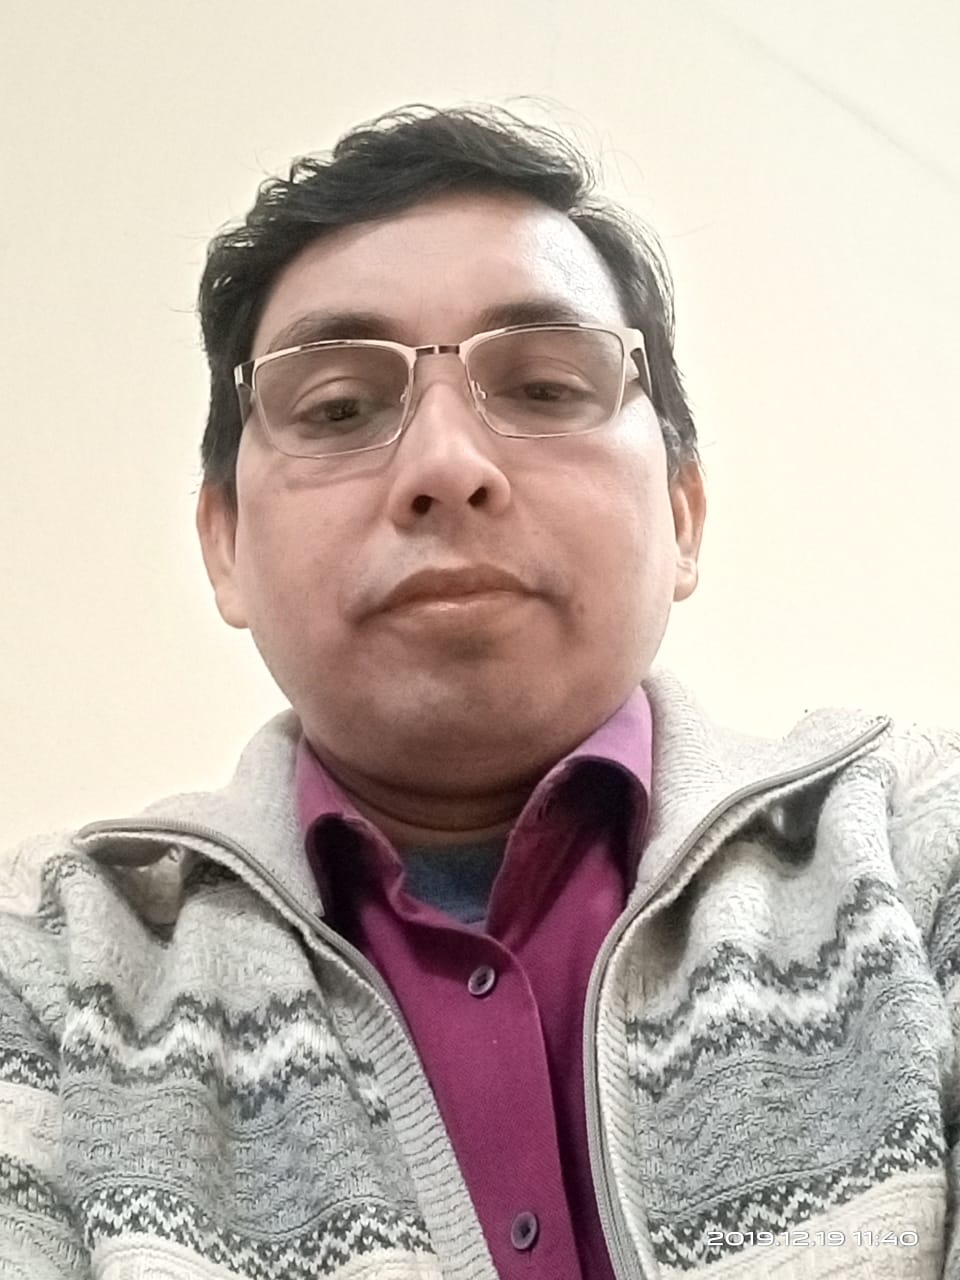 Dr Vijay Kumar